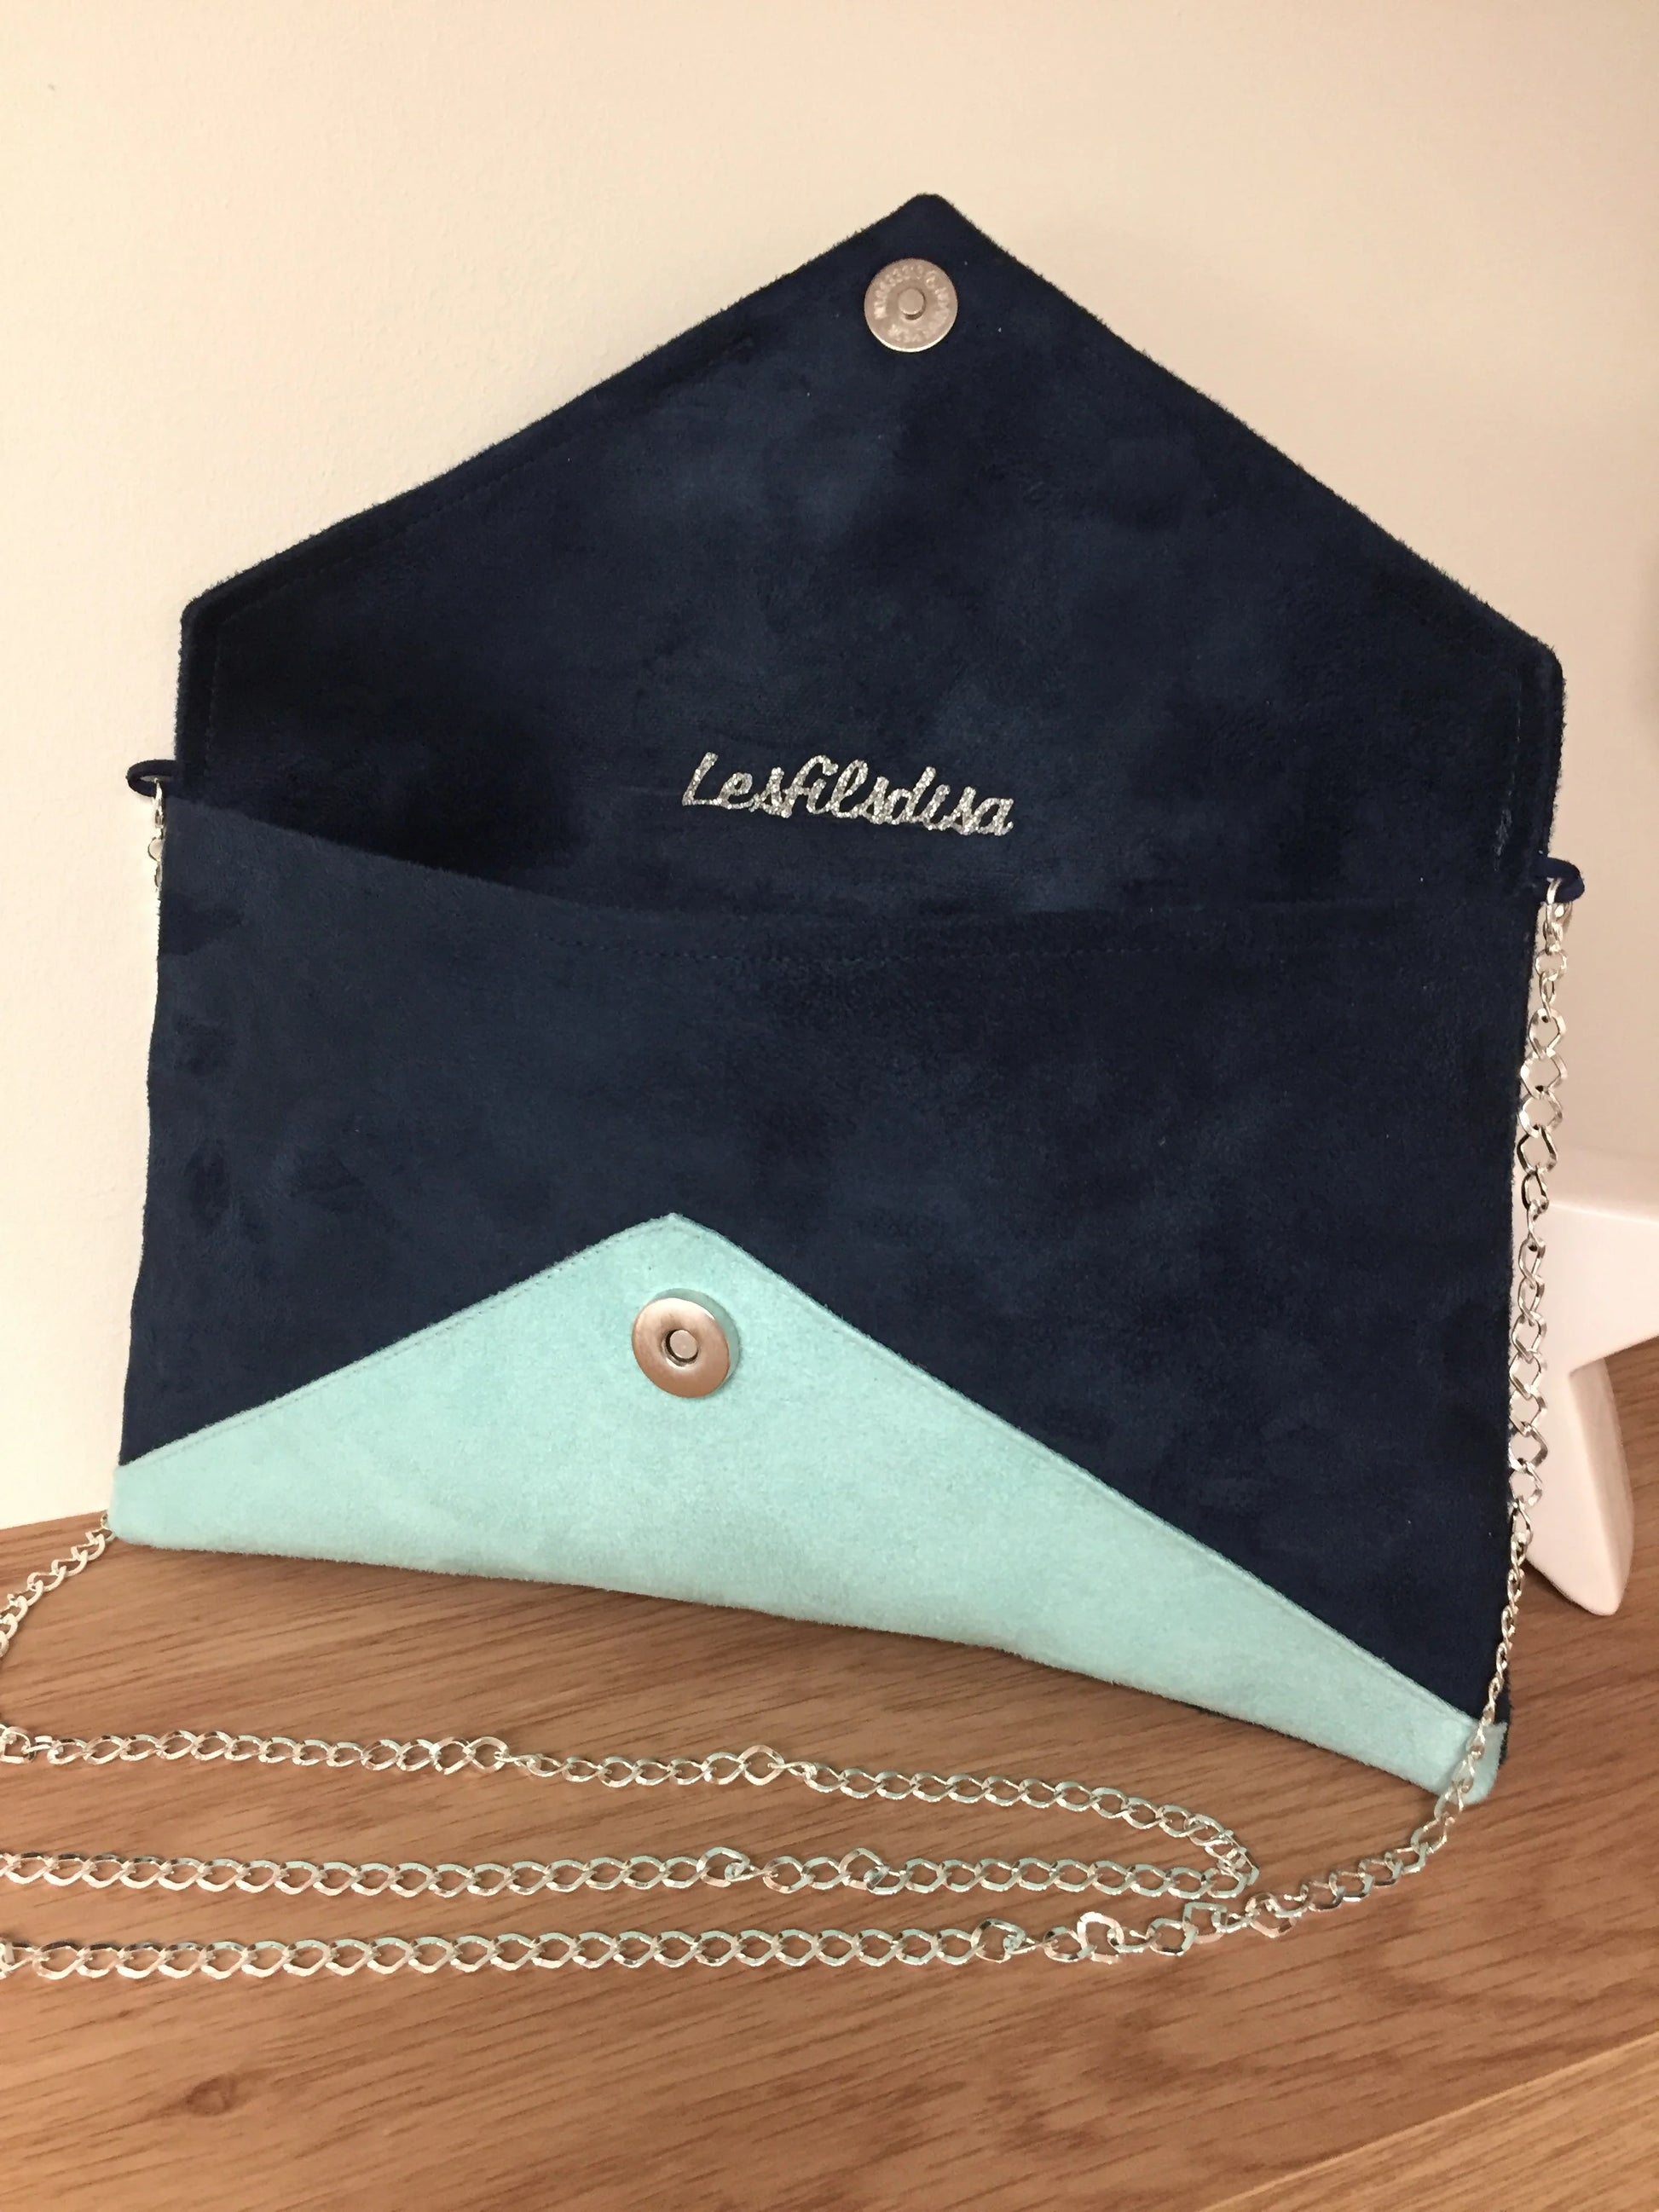 Le sac pochette Isa bleu marine et vert menthe à paillettes argentées, avec chainette amovible, ouvert.